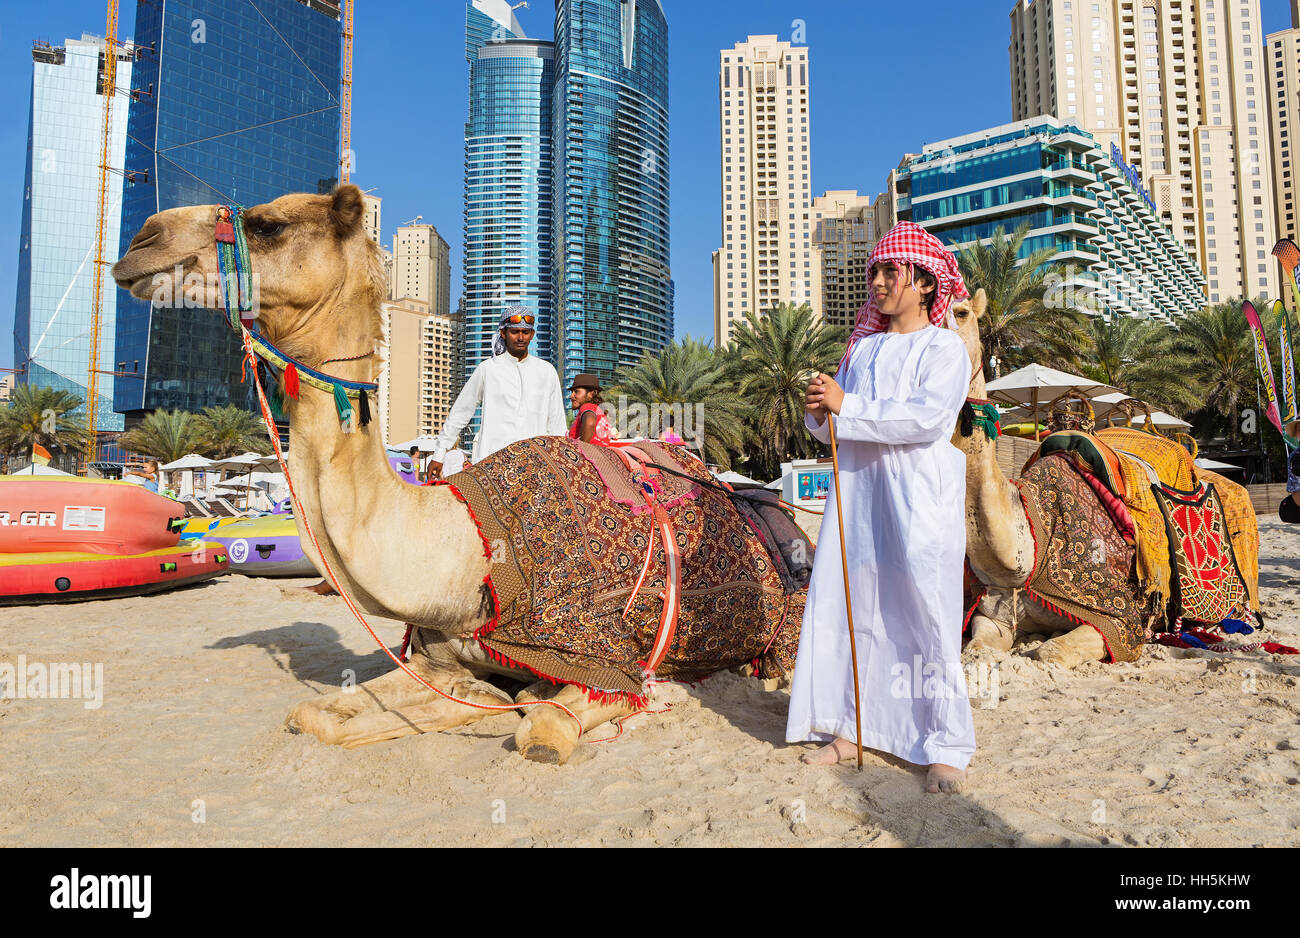 DUBAI MARINA,UNITED ARAB EMIRATES-MARCH 10, 2016: Dubai Marina skyscrapers and camels on the beach,Dubai,United Arab Emirates Stock Photo